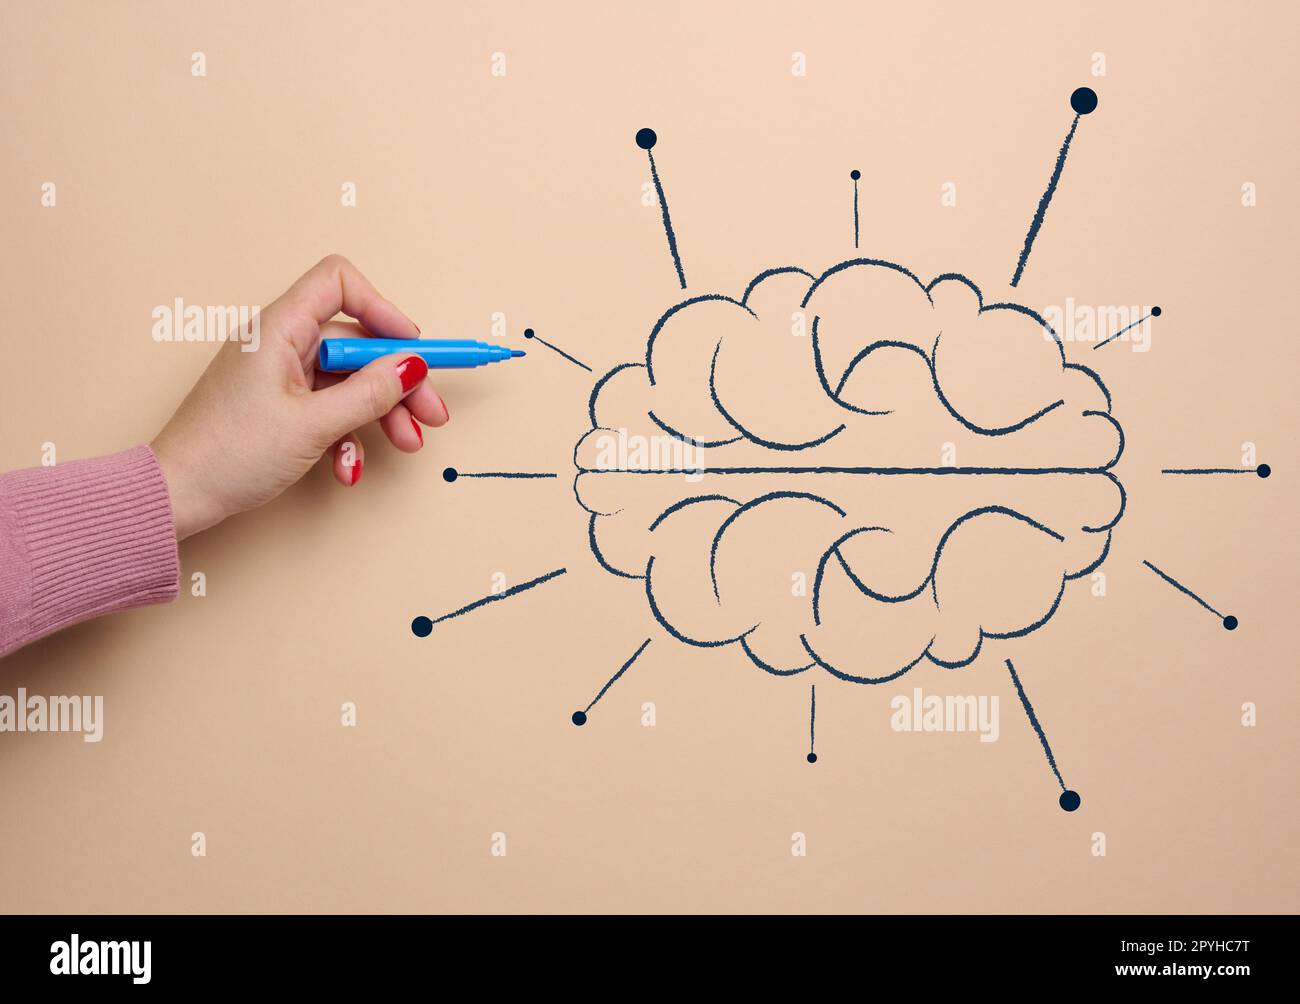 Menschliches Gehirn gezeichnet mit Marker, Konzept des Lernens künstlicher Intelligenz durch Informationszusatz Stockfoto